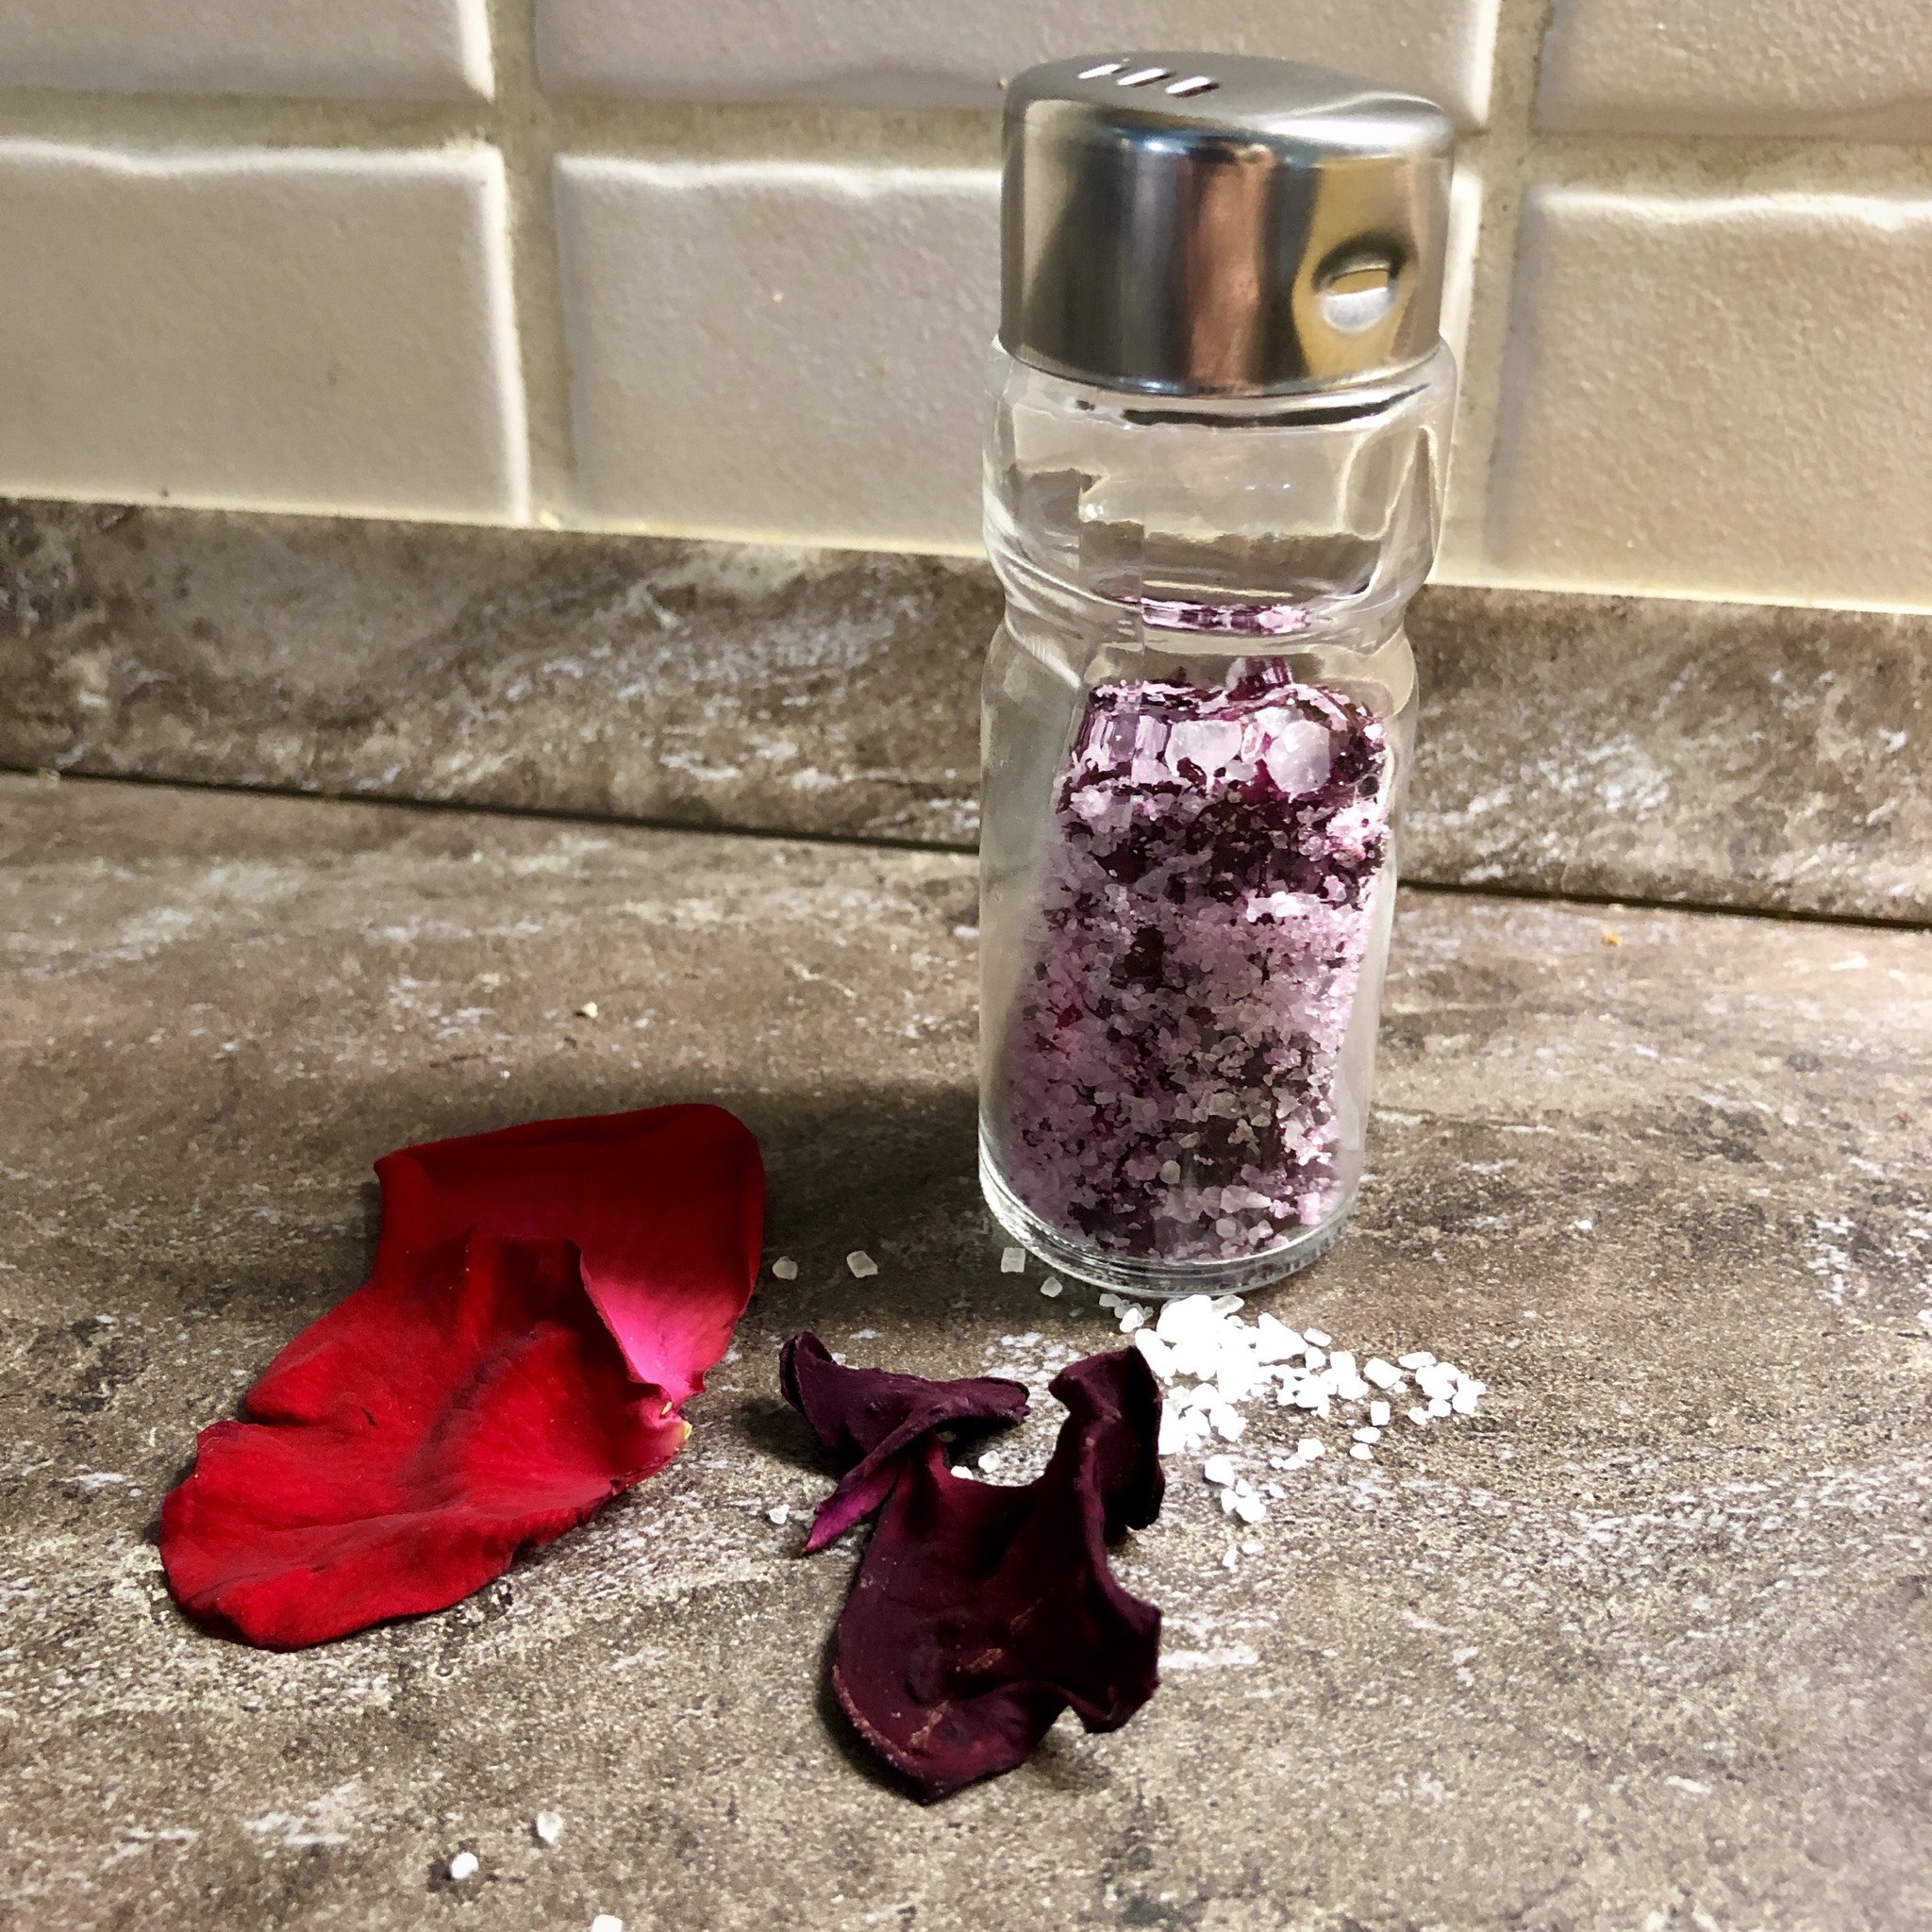 Bild zum Schritt 11 für das Bastel- und DIY-Abenteuer für Kinder: 'Rosensalz ist ein sehr dekoratives Salz, da es durch seine...'